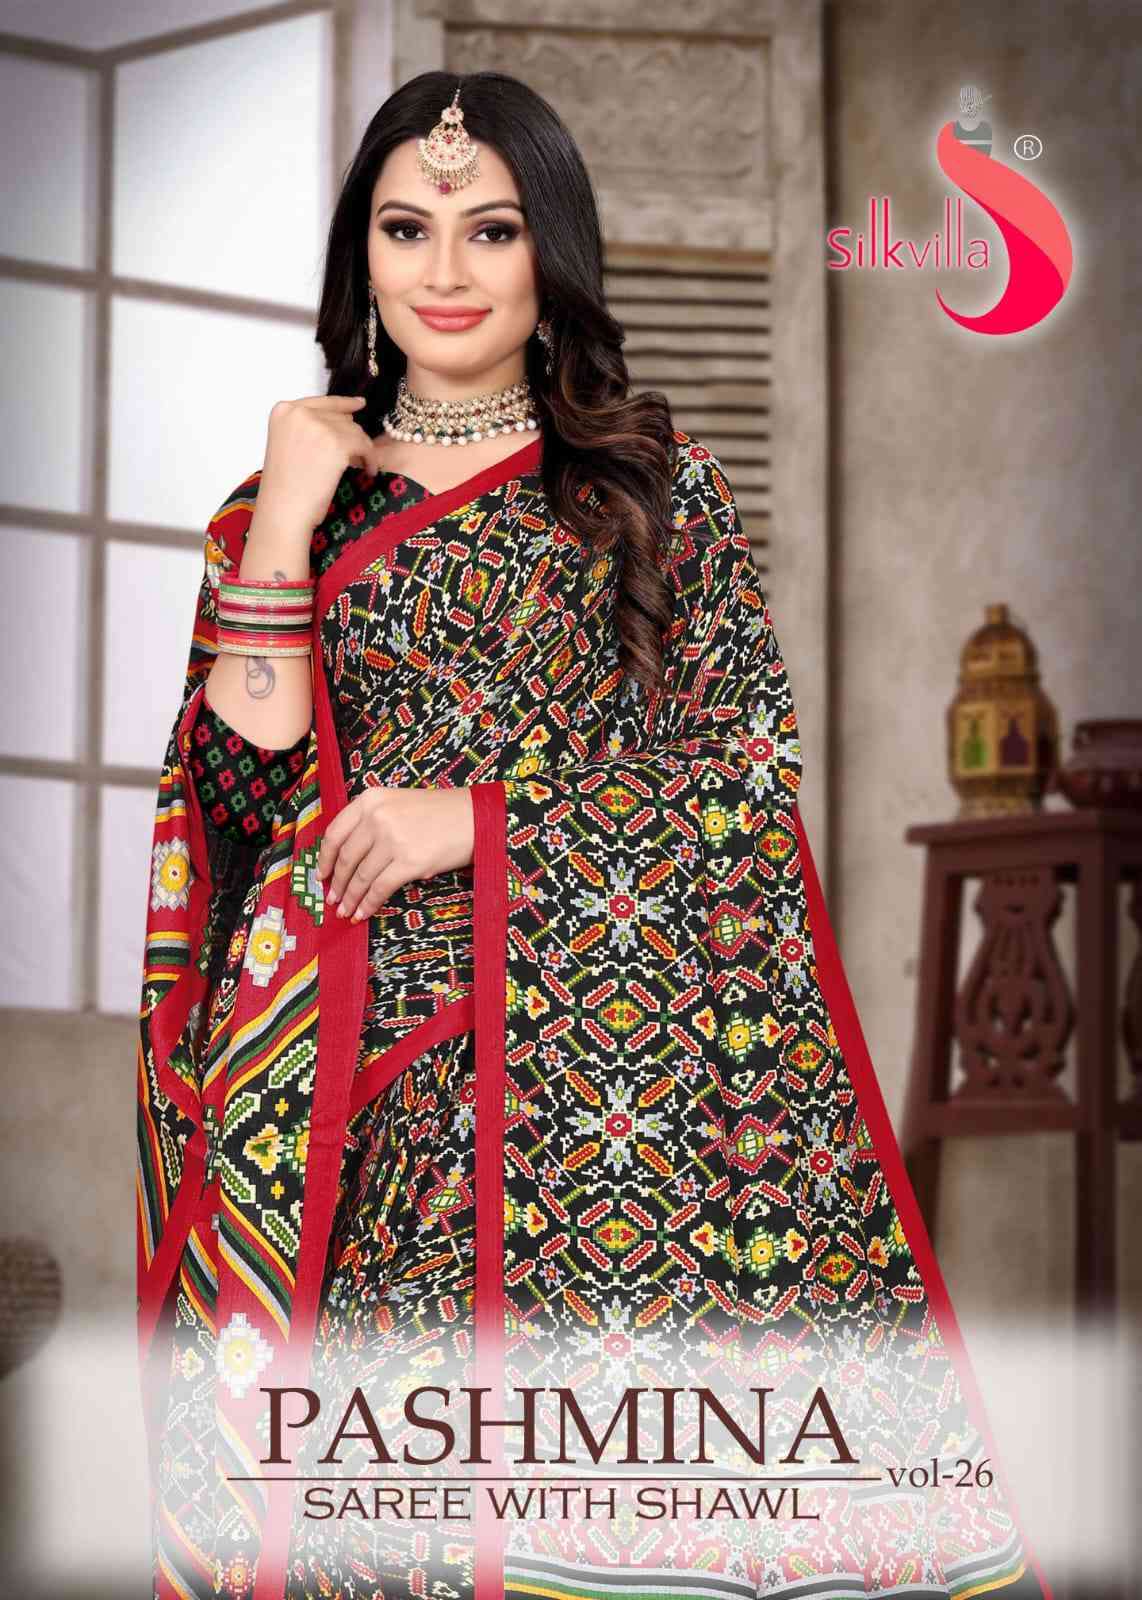 Silkvilla Pashmina Saree With Shawl Vol 26 Exclusive Digital Print Saree Catalog Supplier